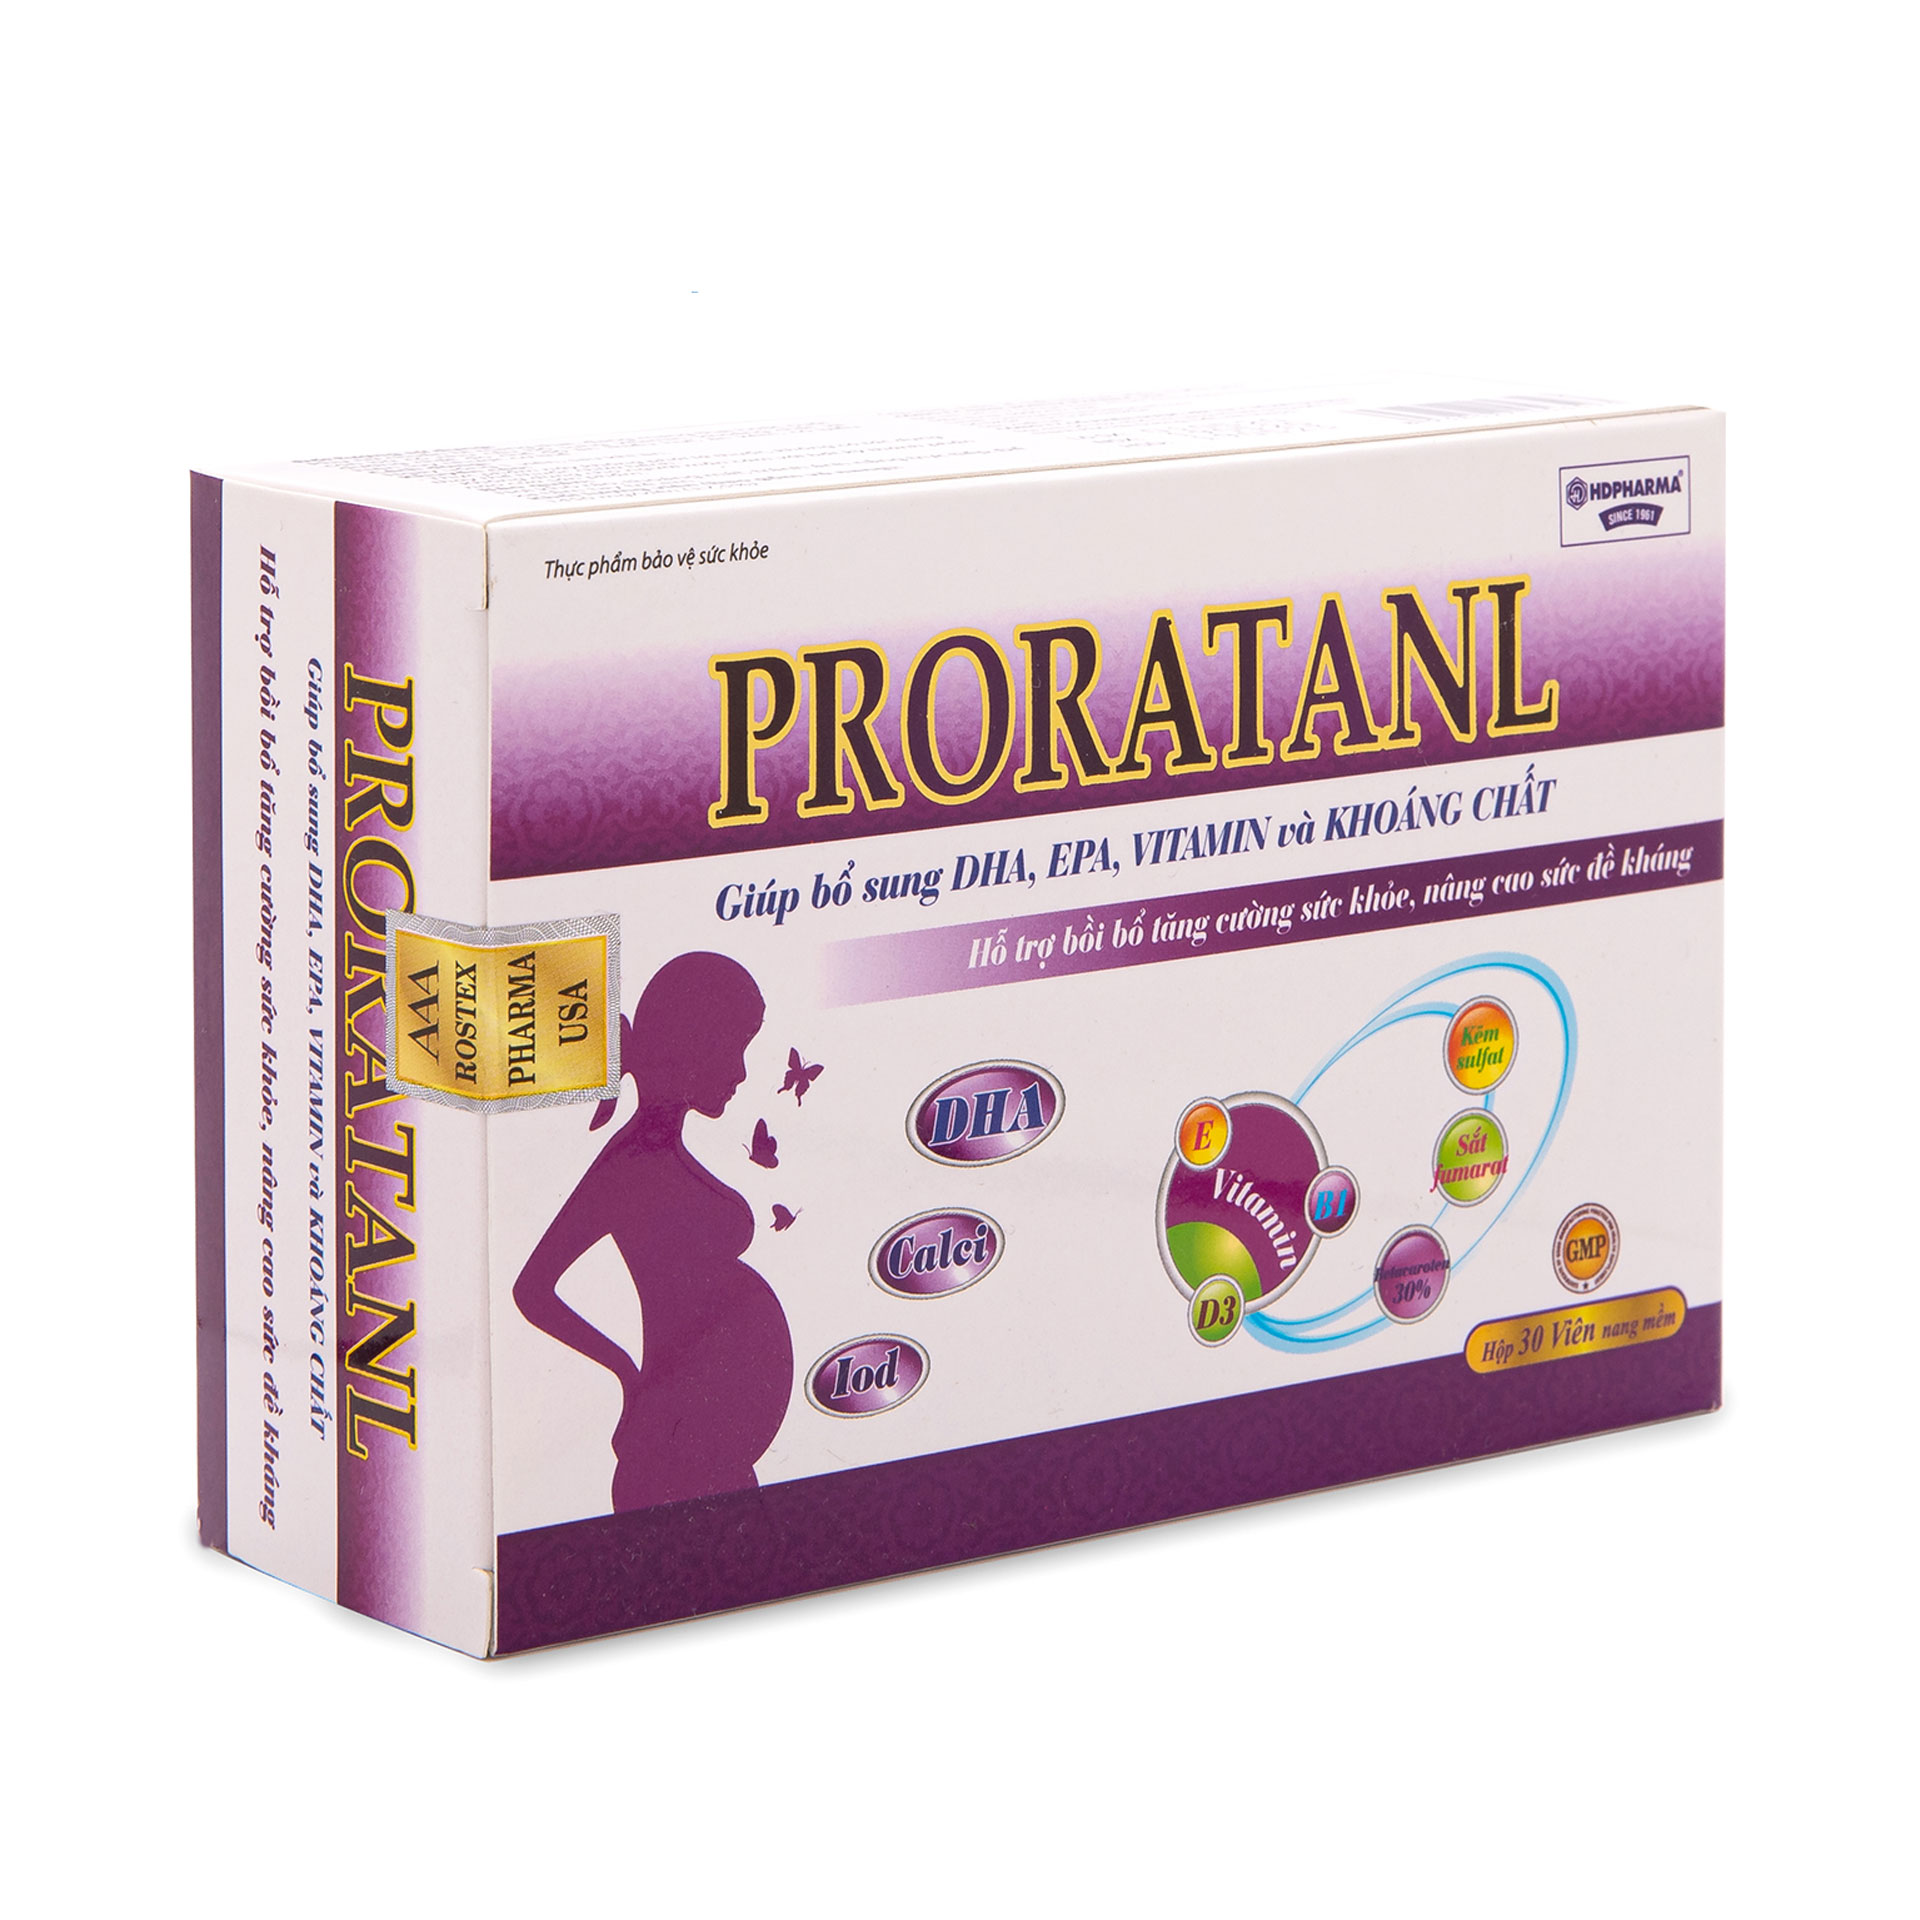 Vitamin tổng hợp Proratanl bổ sung DHA, EPA, khoáng chất, tăng cường sức khỏe cho phụ nữ mang thai và cho con bú - Hộp 30 viên